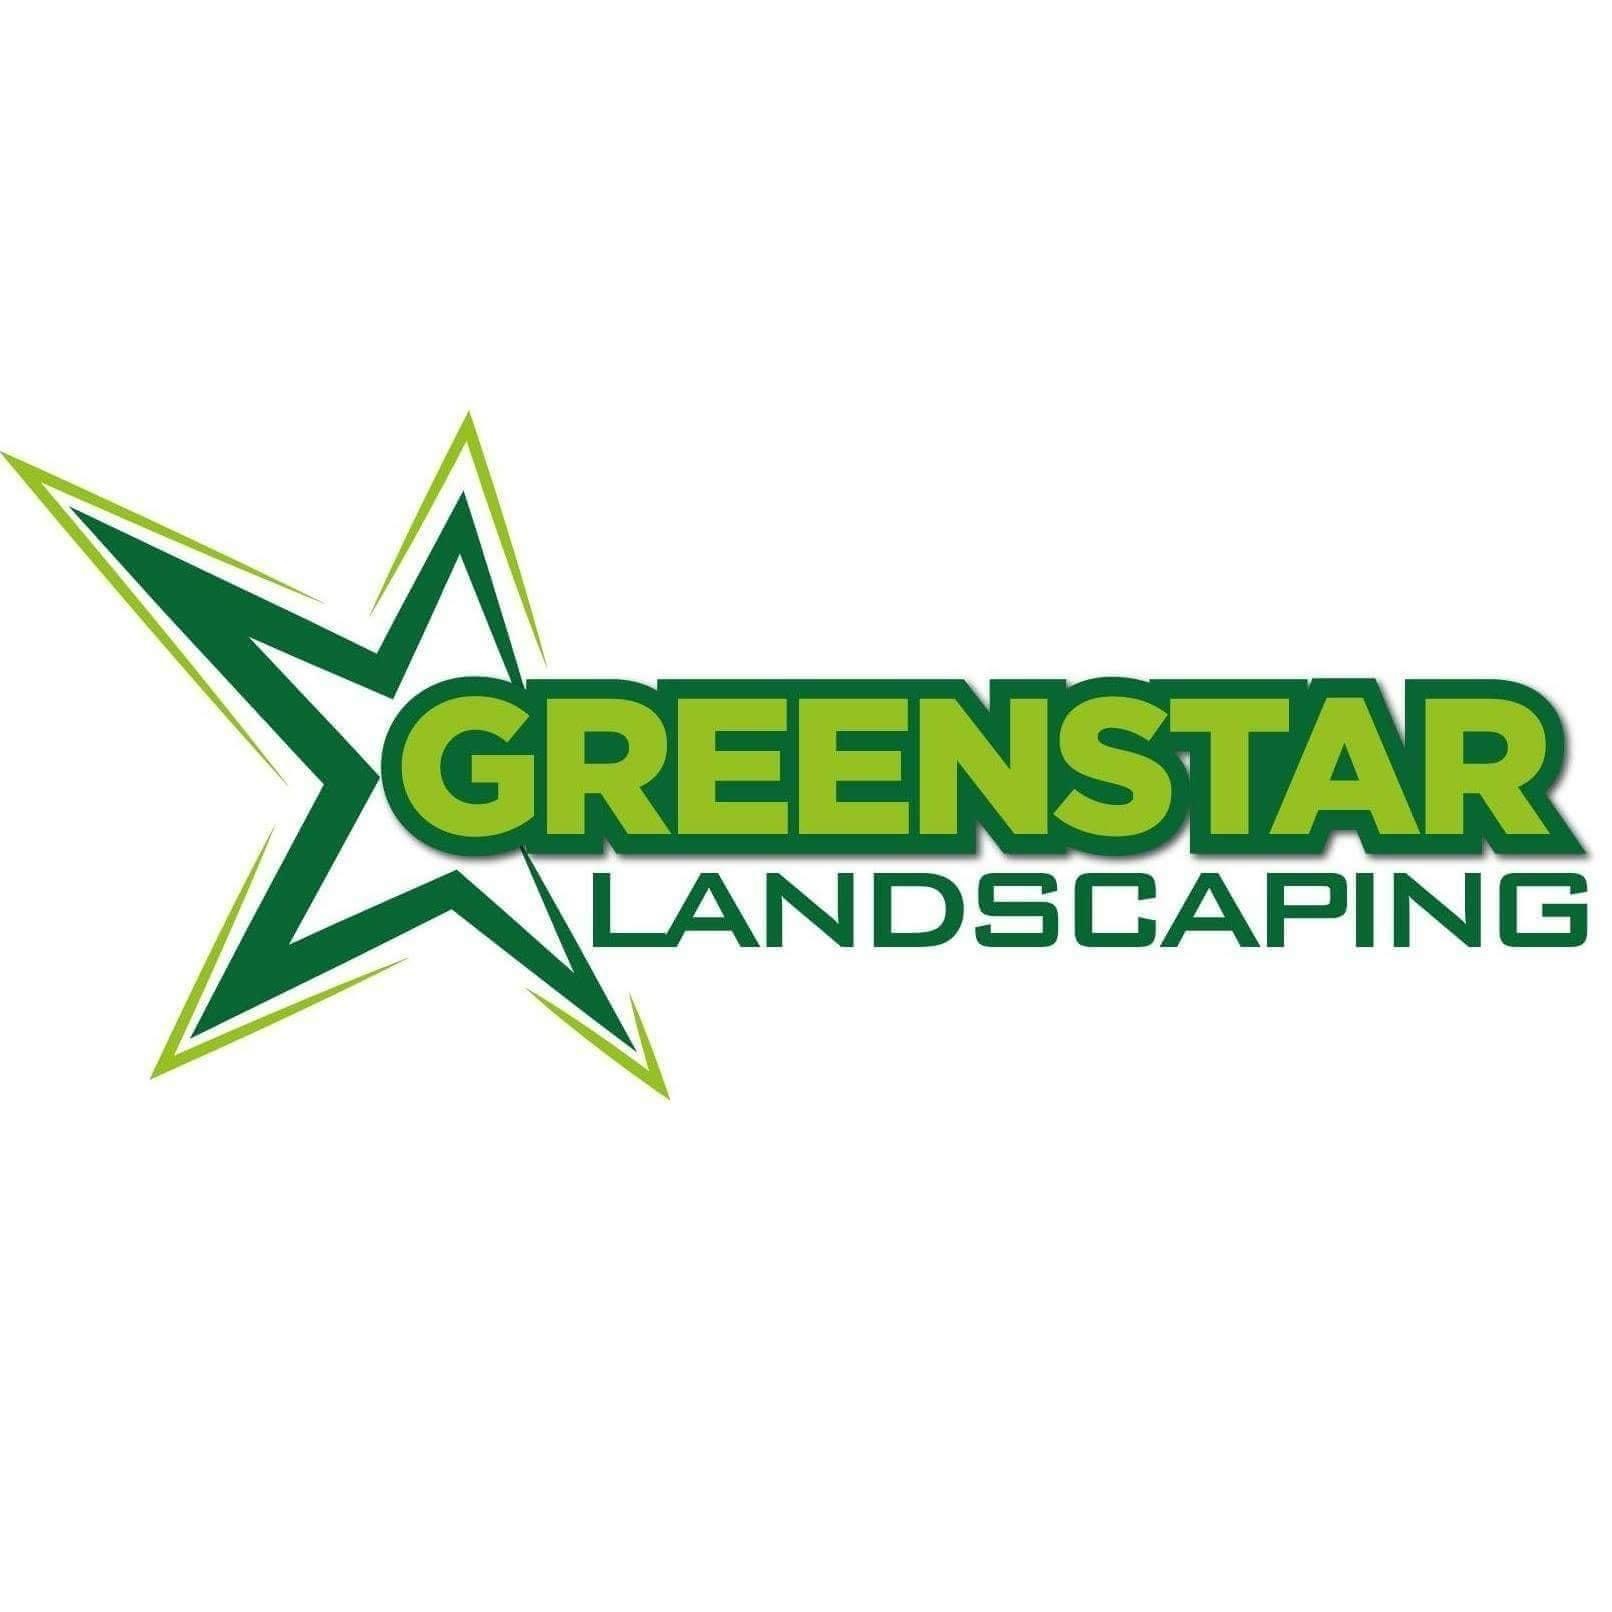 Greenstar Landscaping